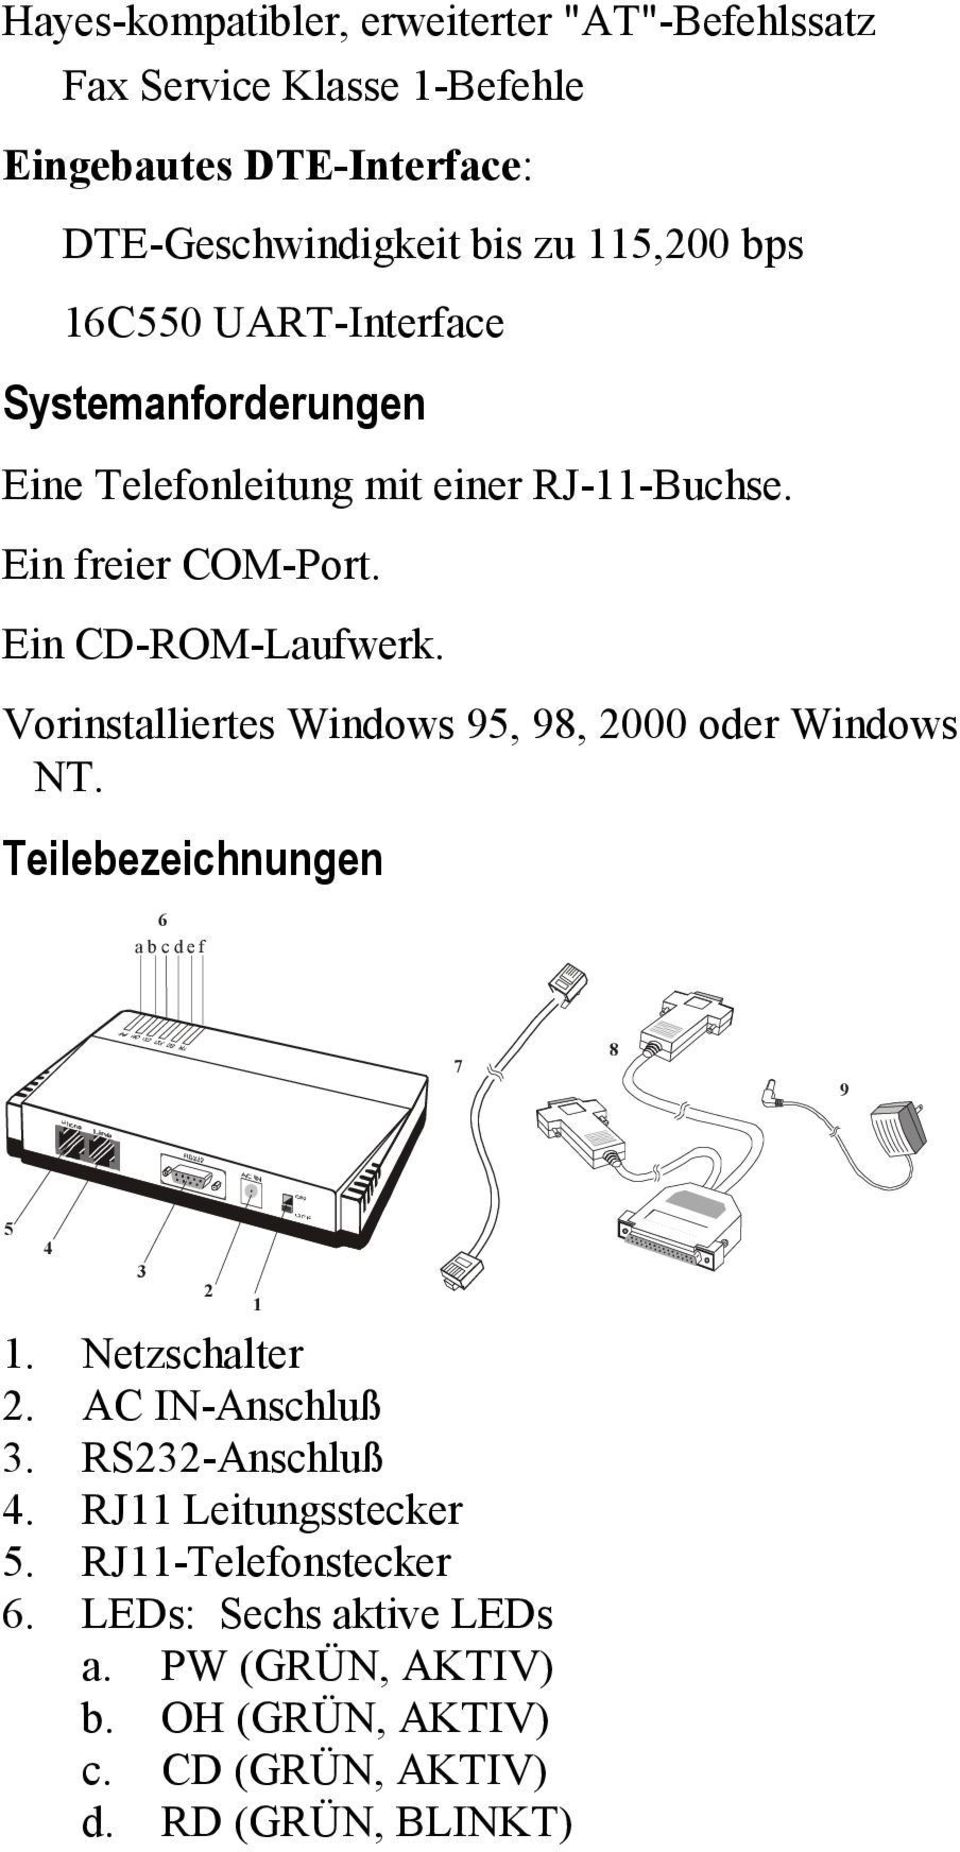 Vorinstalliertes Windows 95, 98, 2000 oder Windows NT. Teilebezeichnungen 6 abcdef 7 8 9 5 4 3 2 1 1. Netzschalter 2. AC IN-Anschluß 3.